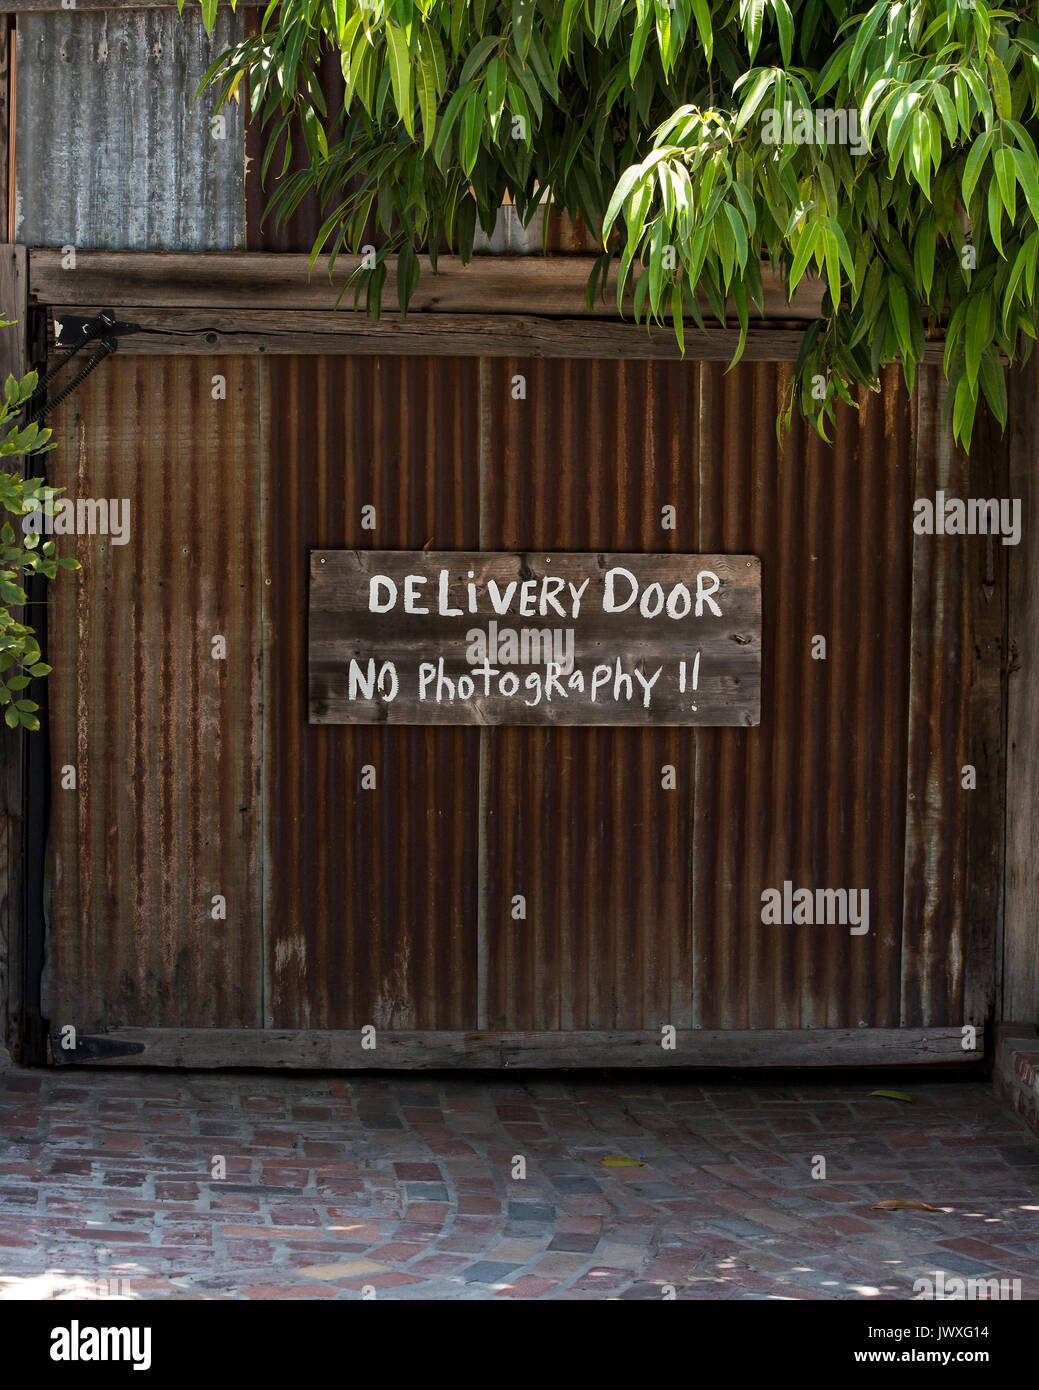 Une image ironique de métal ondulé une porte avec un signe avec l'antipathique mots 'Photographie' Aucun, à San Juan Capistrano, en Californie. Banque D'Images